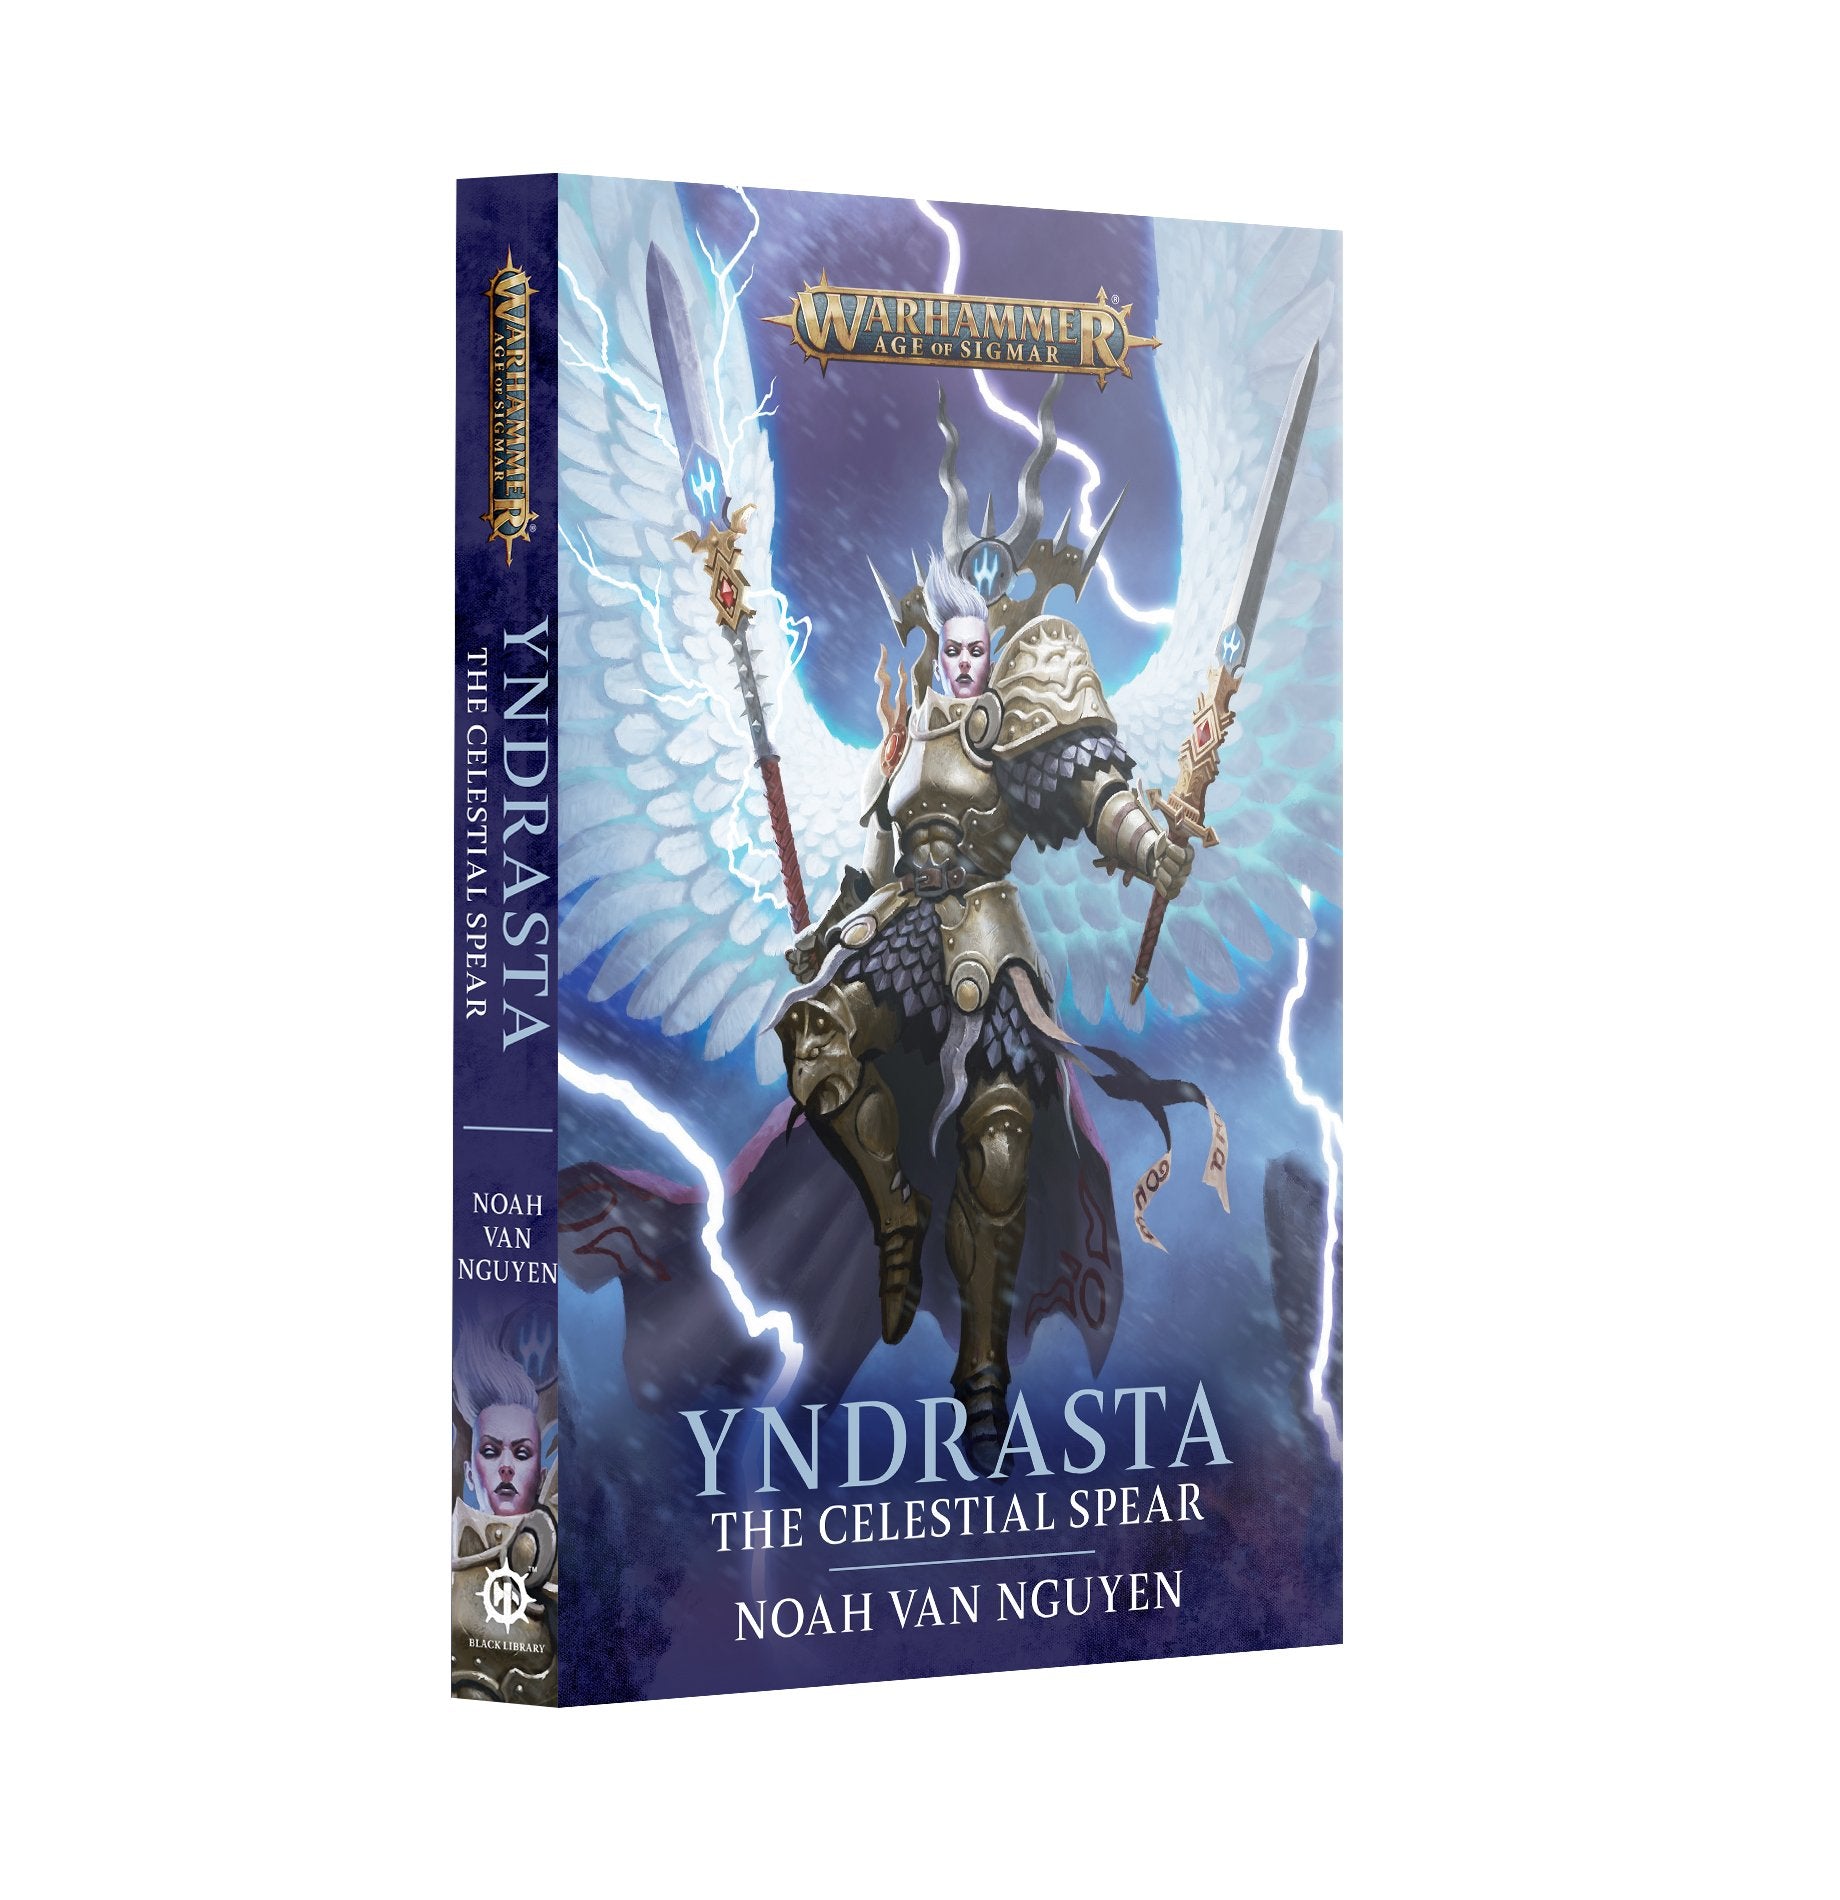 Yndrasta: The Celestial Spear (Paperback) - Release Date 11/5/24 - Loaded Dice